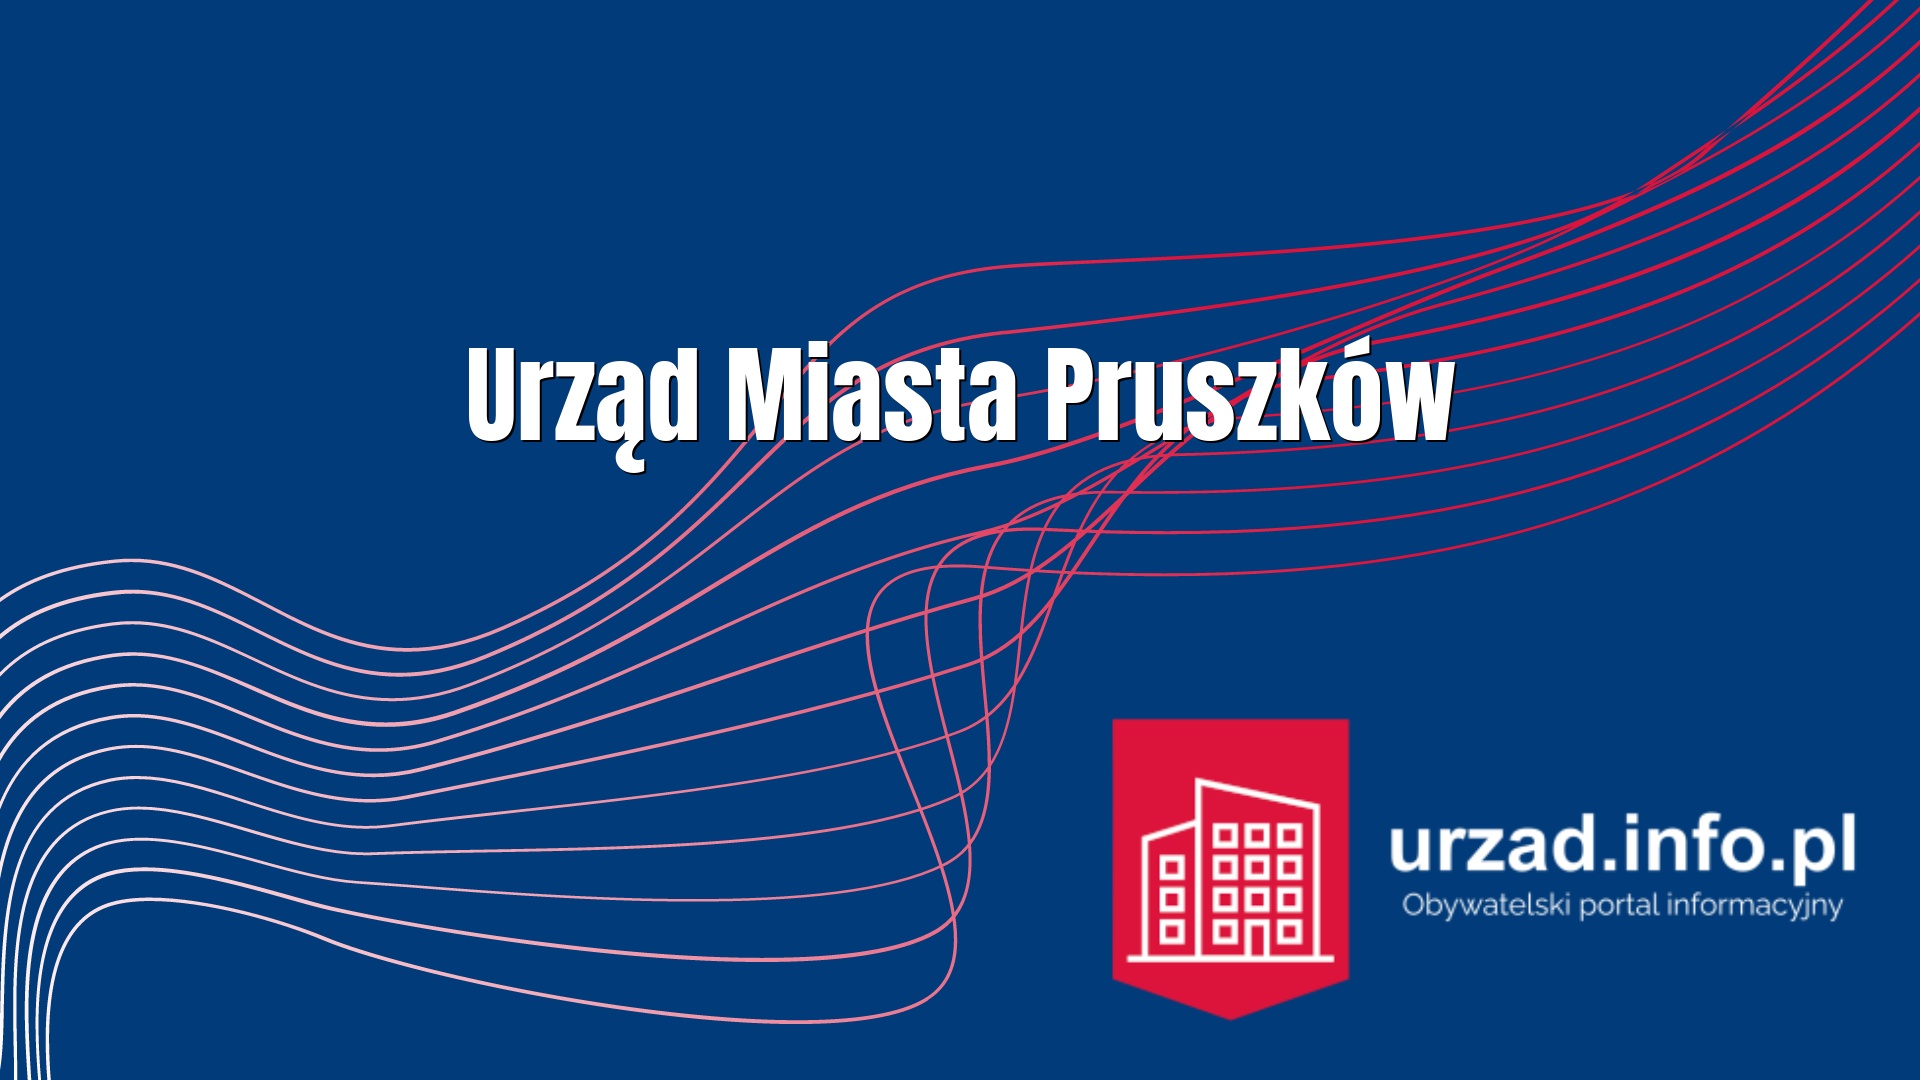 Urząd Miasta Pruszków